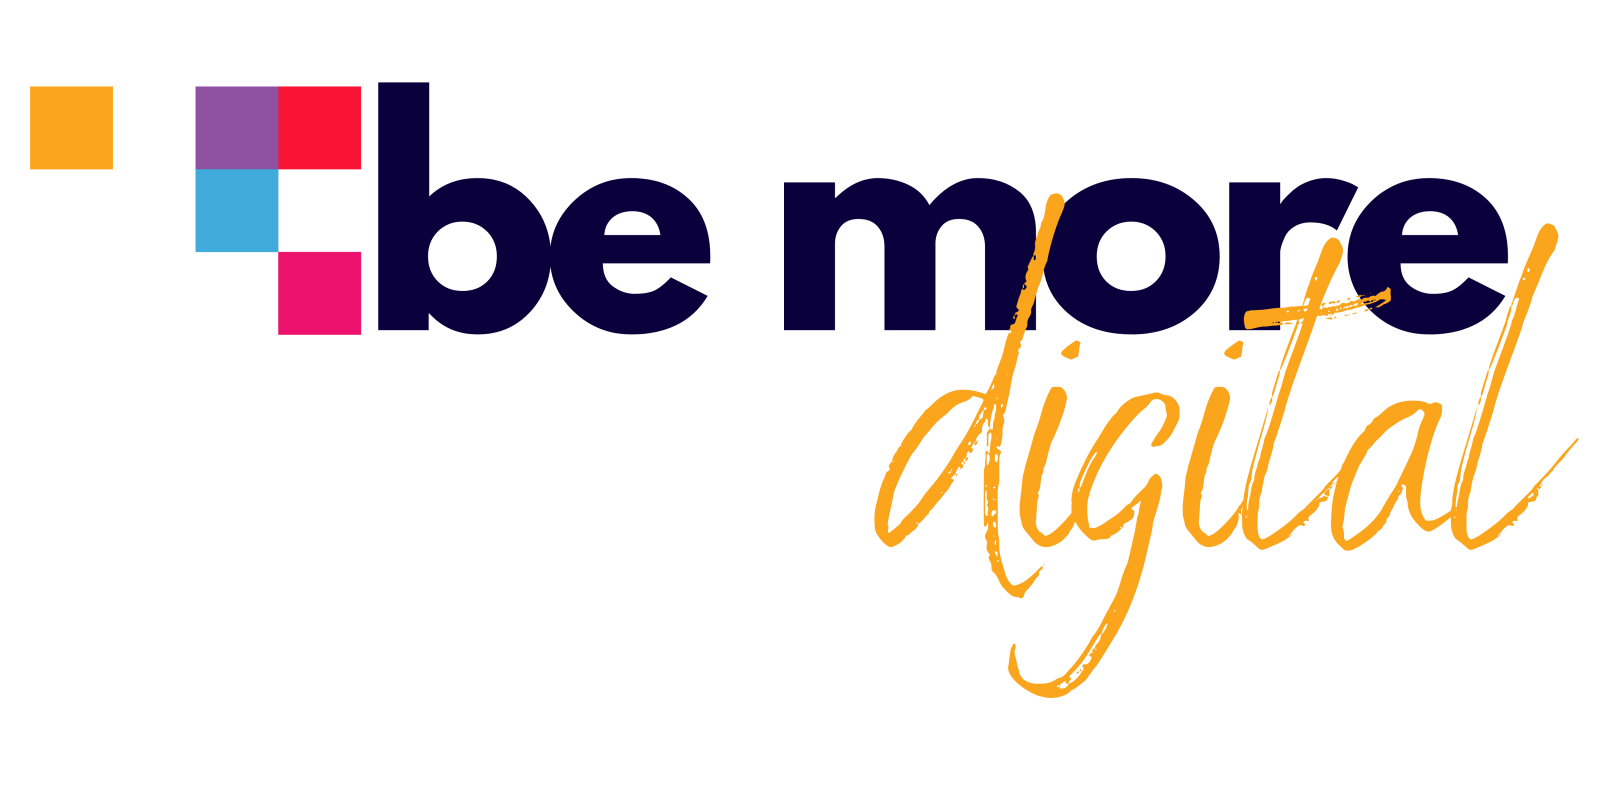 Be More Digital